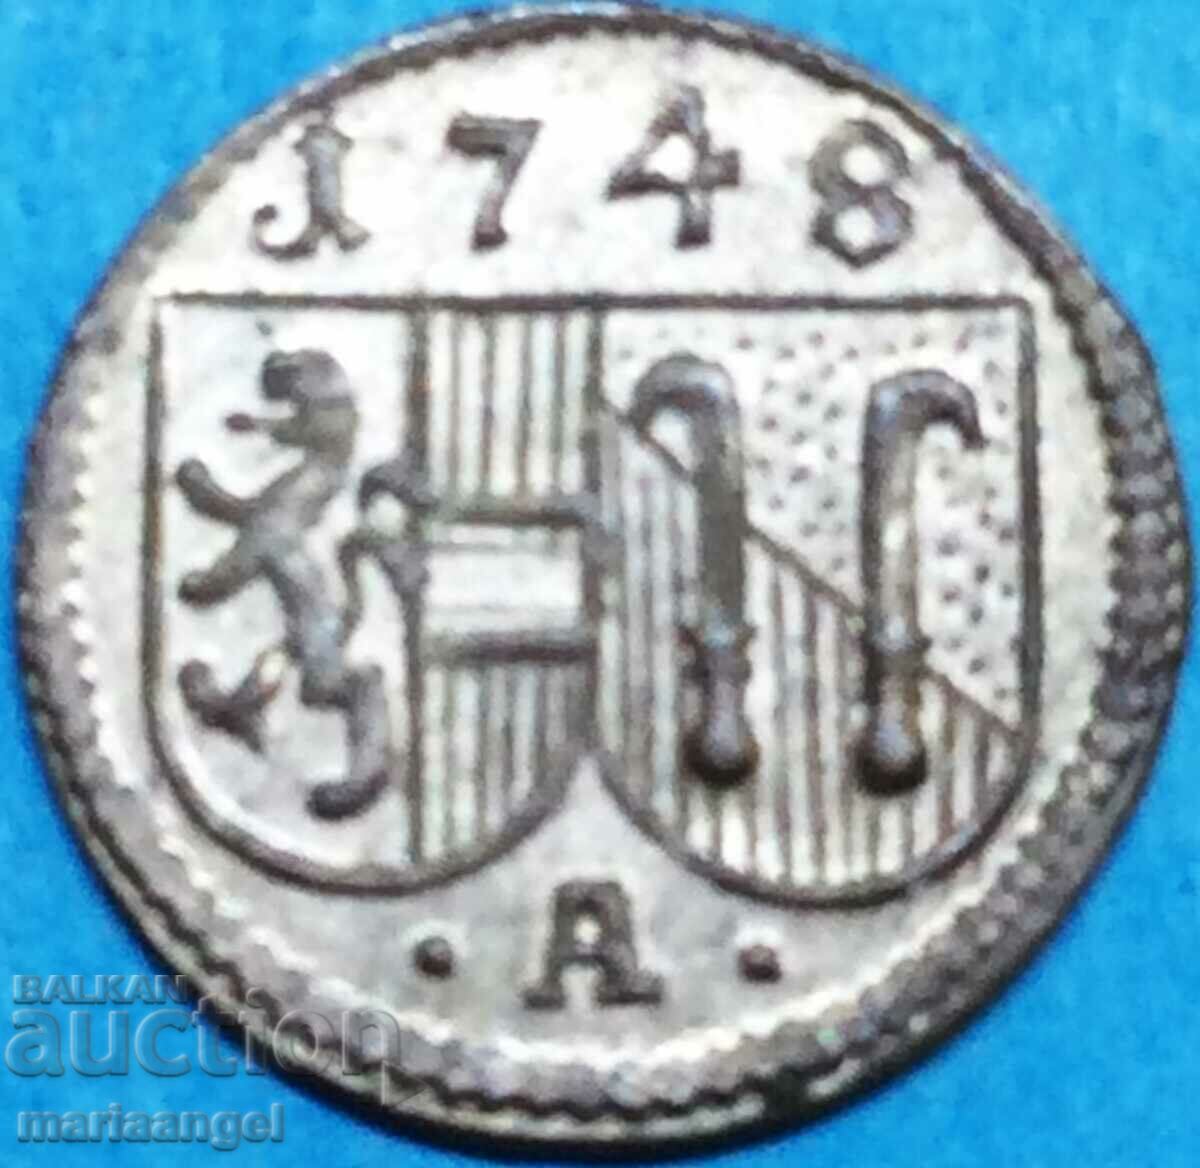 1 pfennig 1748 Austria Salzburg 1 sided Andreas Jacob silver